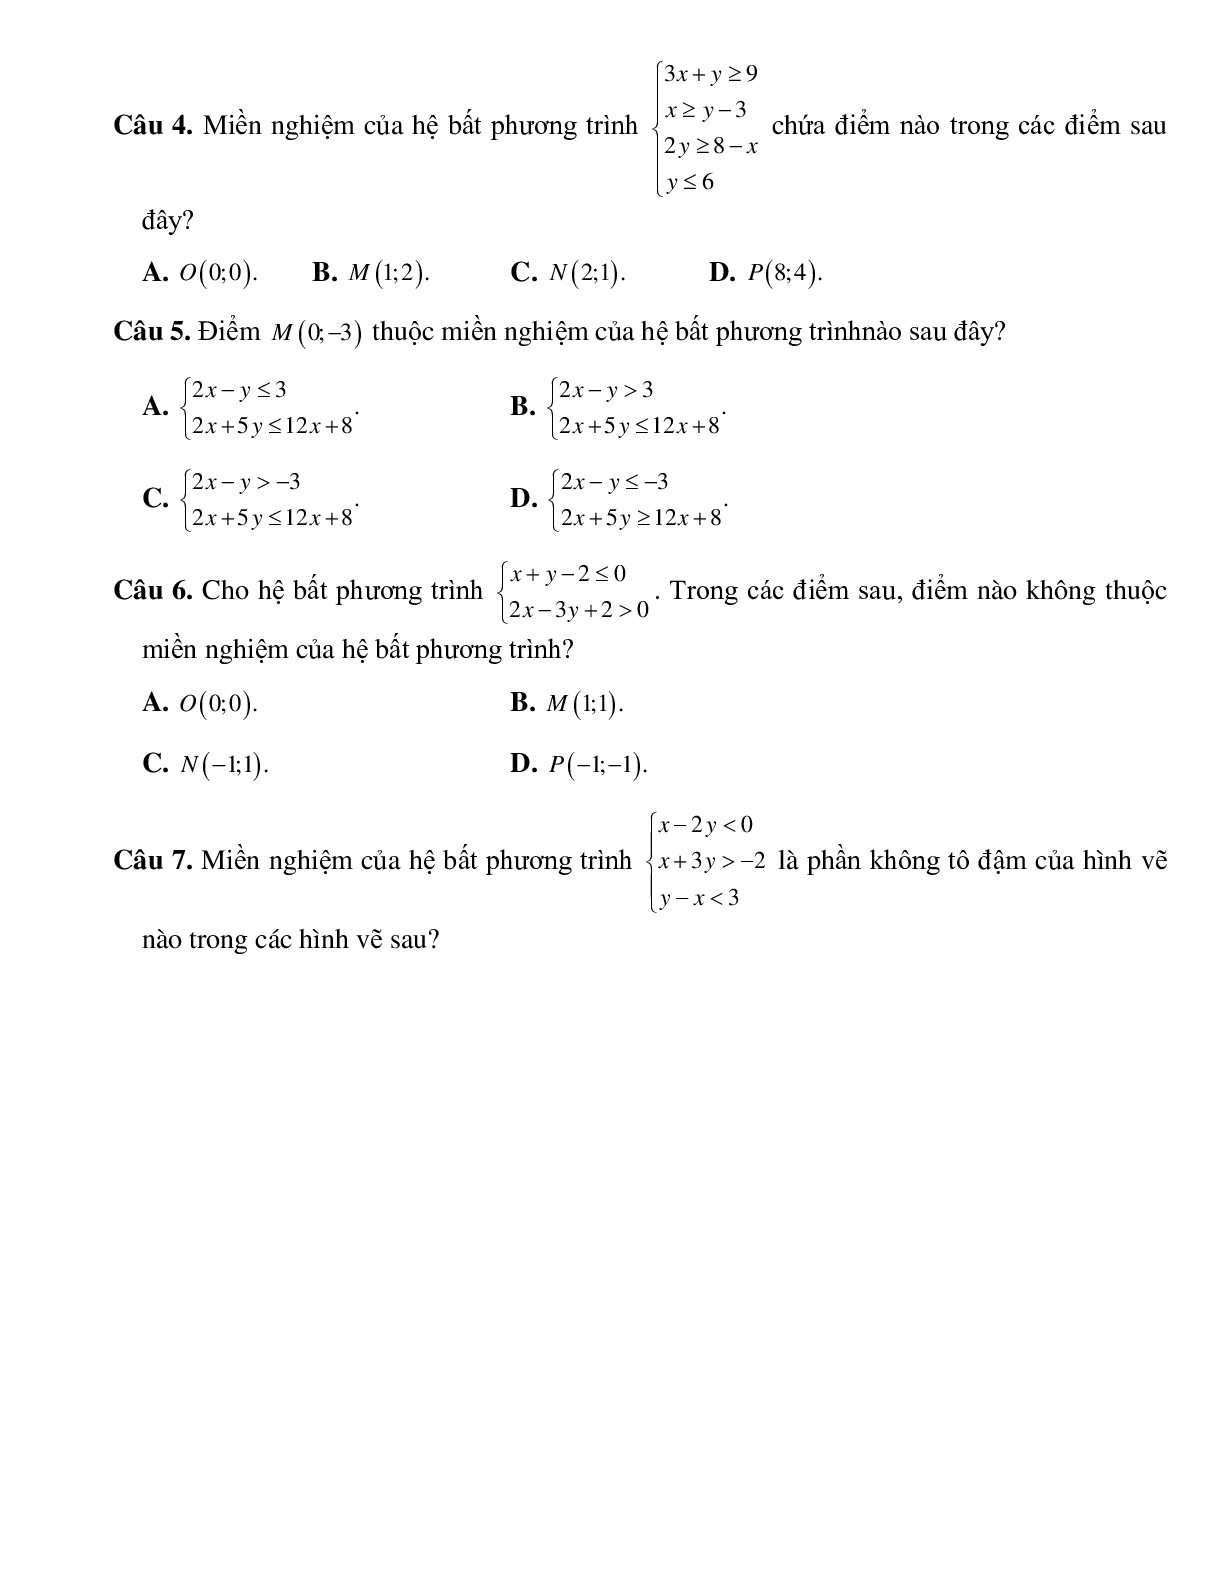 Bài tập hệ bất phương trình bậc nhất hai ẩn Toán 10 (trang 2)